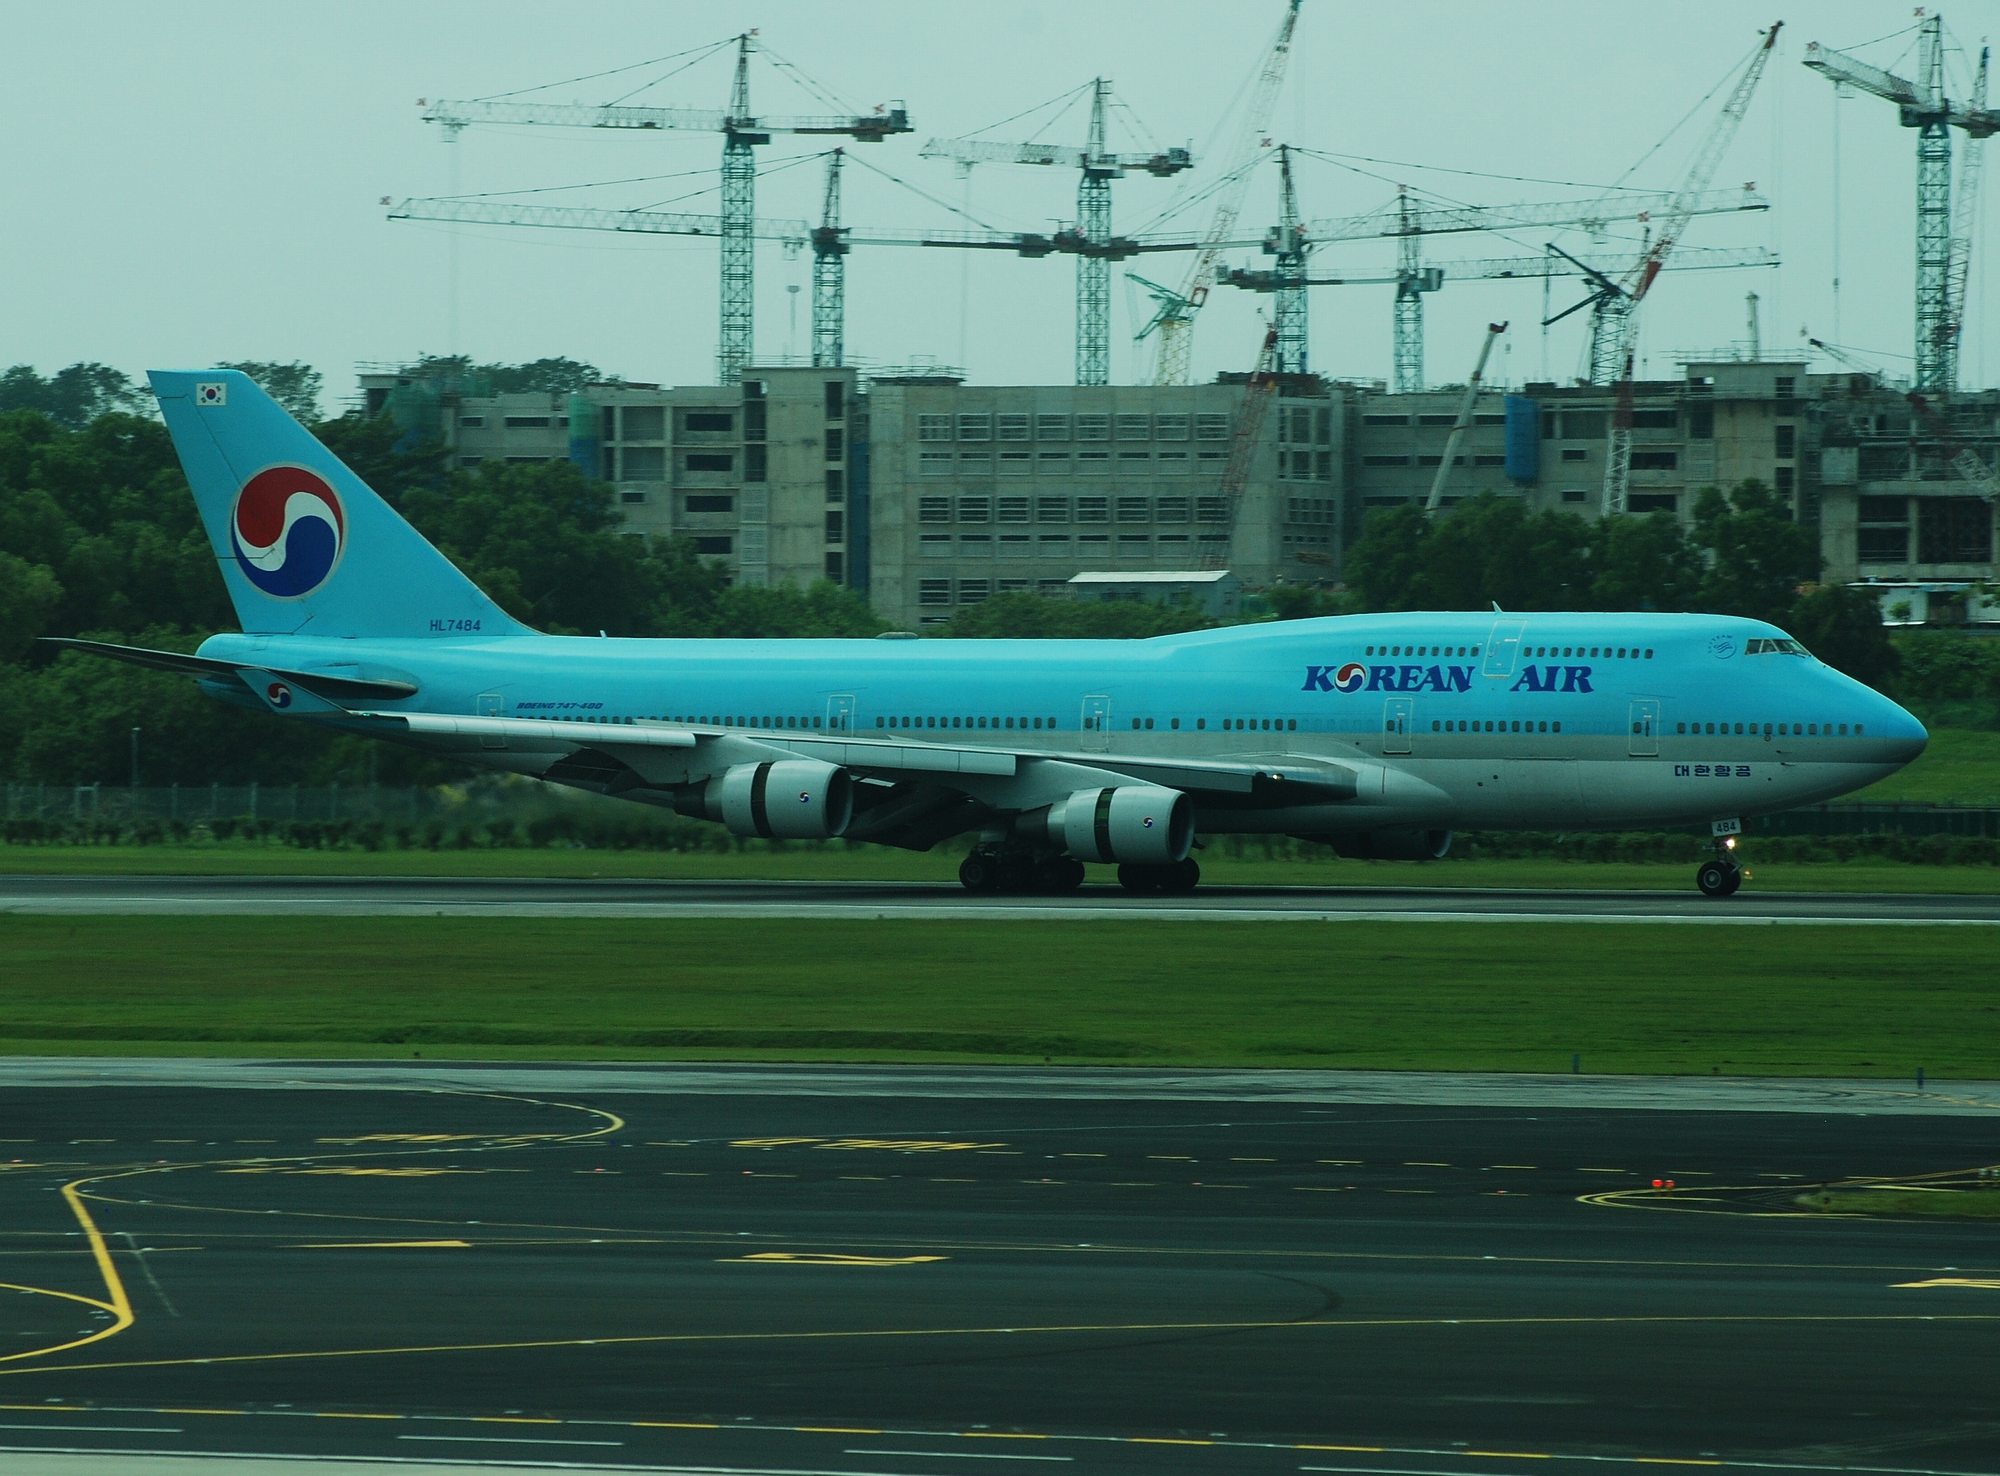 Korean_Air_Boeing_747-400,_HL7484,_SIN_2.jpg